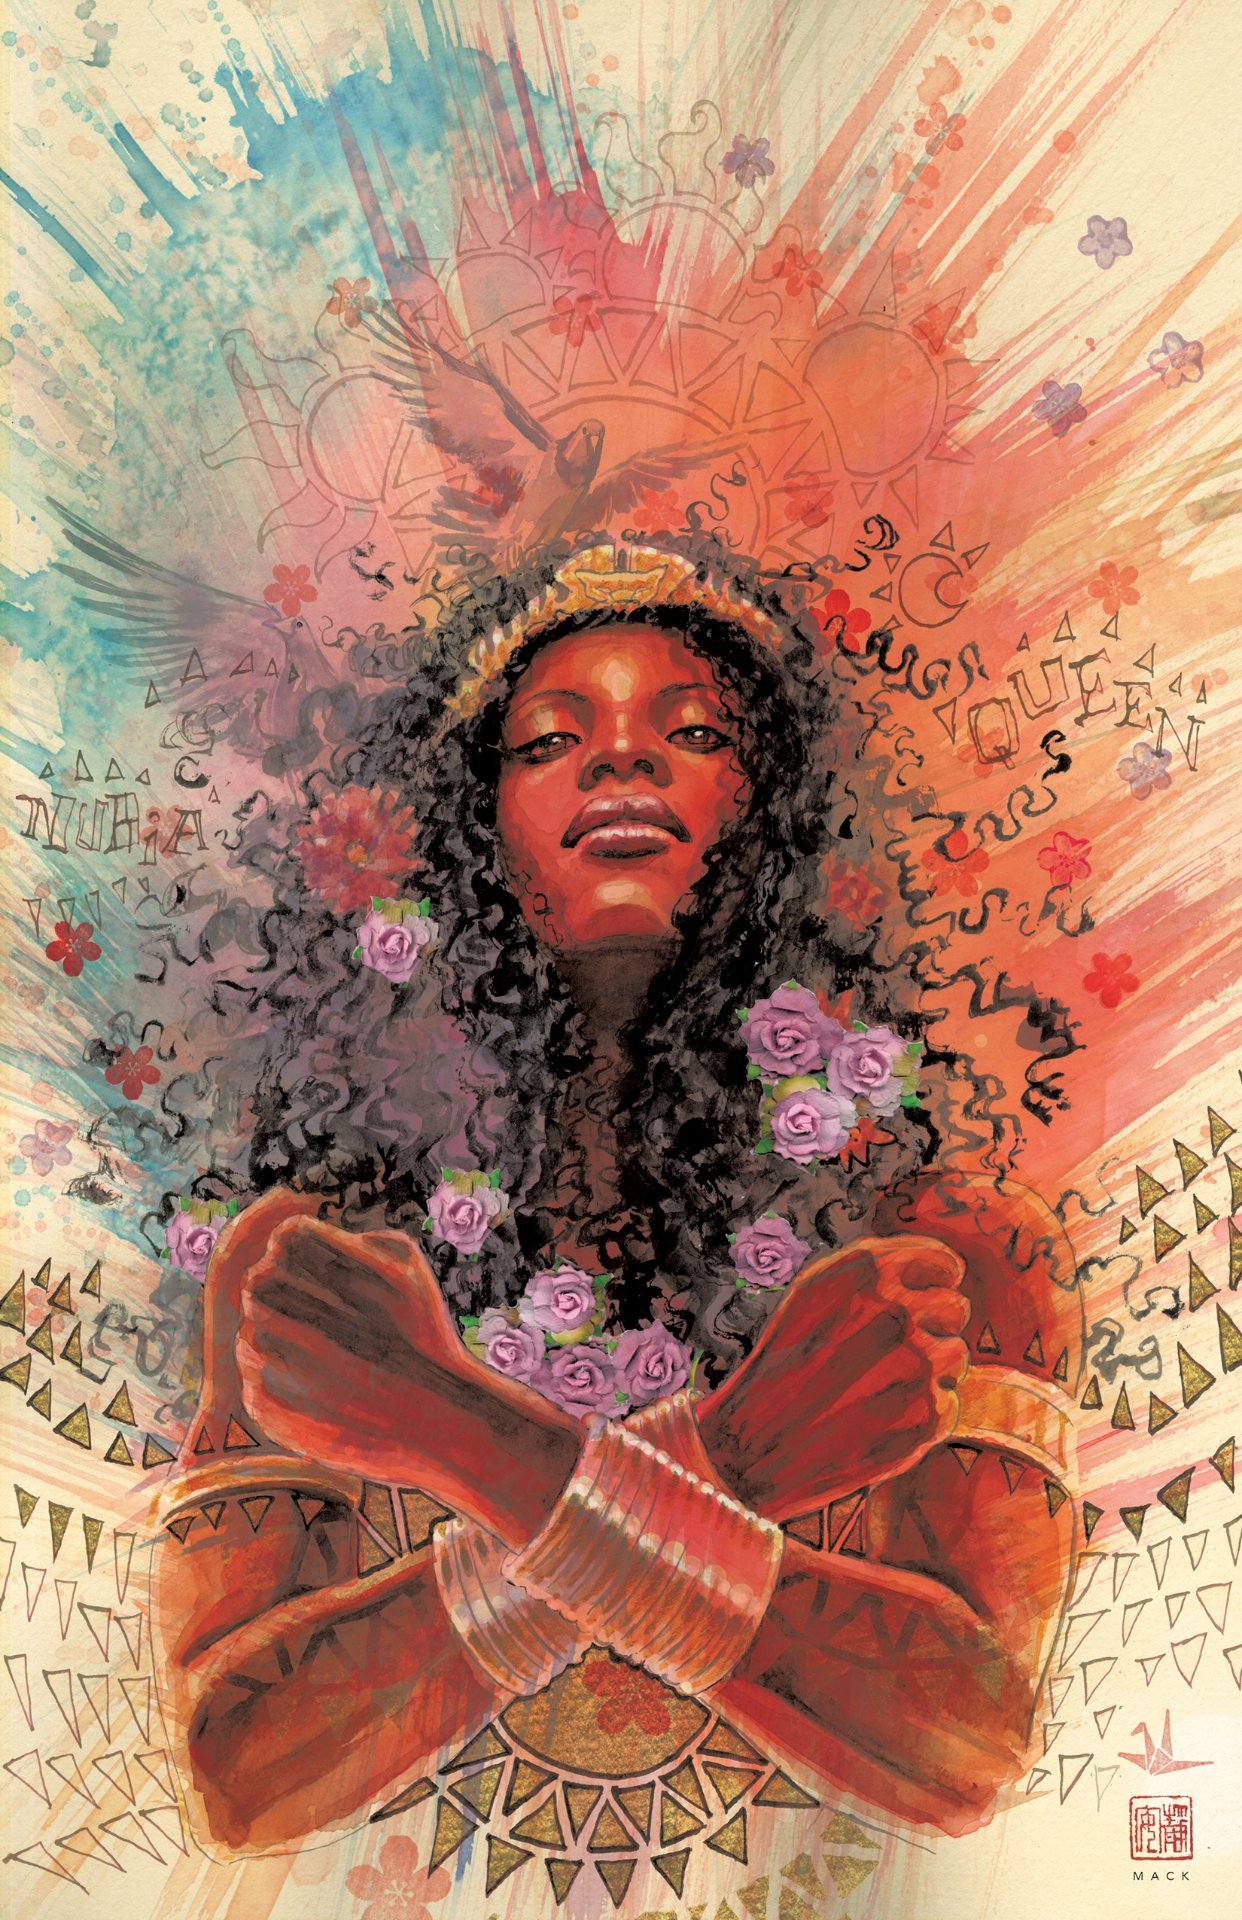 Cover di Nubia: Coronation Special di David Mack, con l'incoronazione della Regina delle Amazzoni